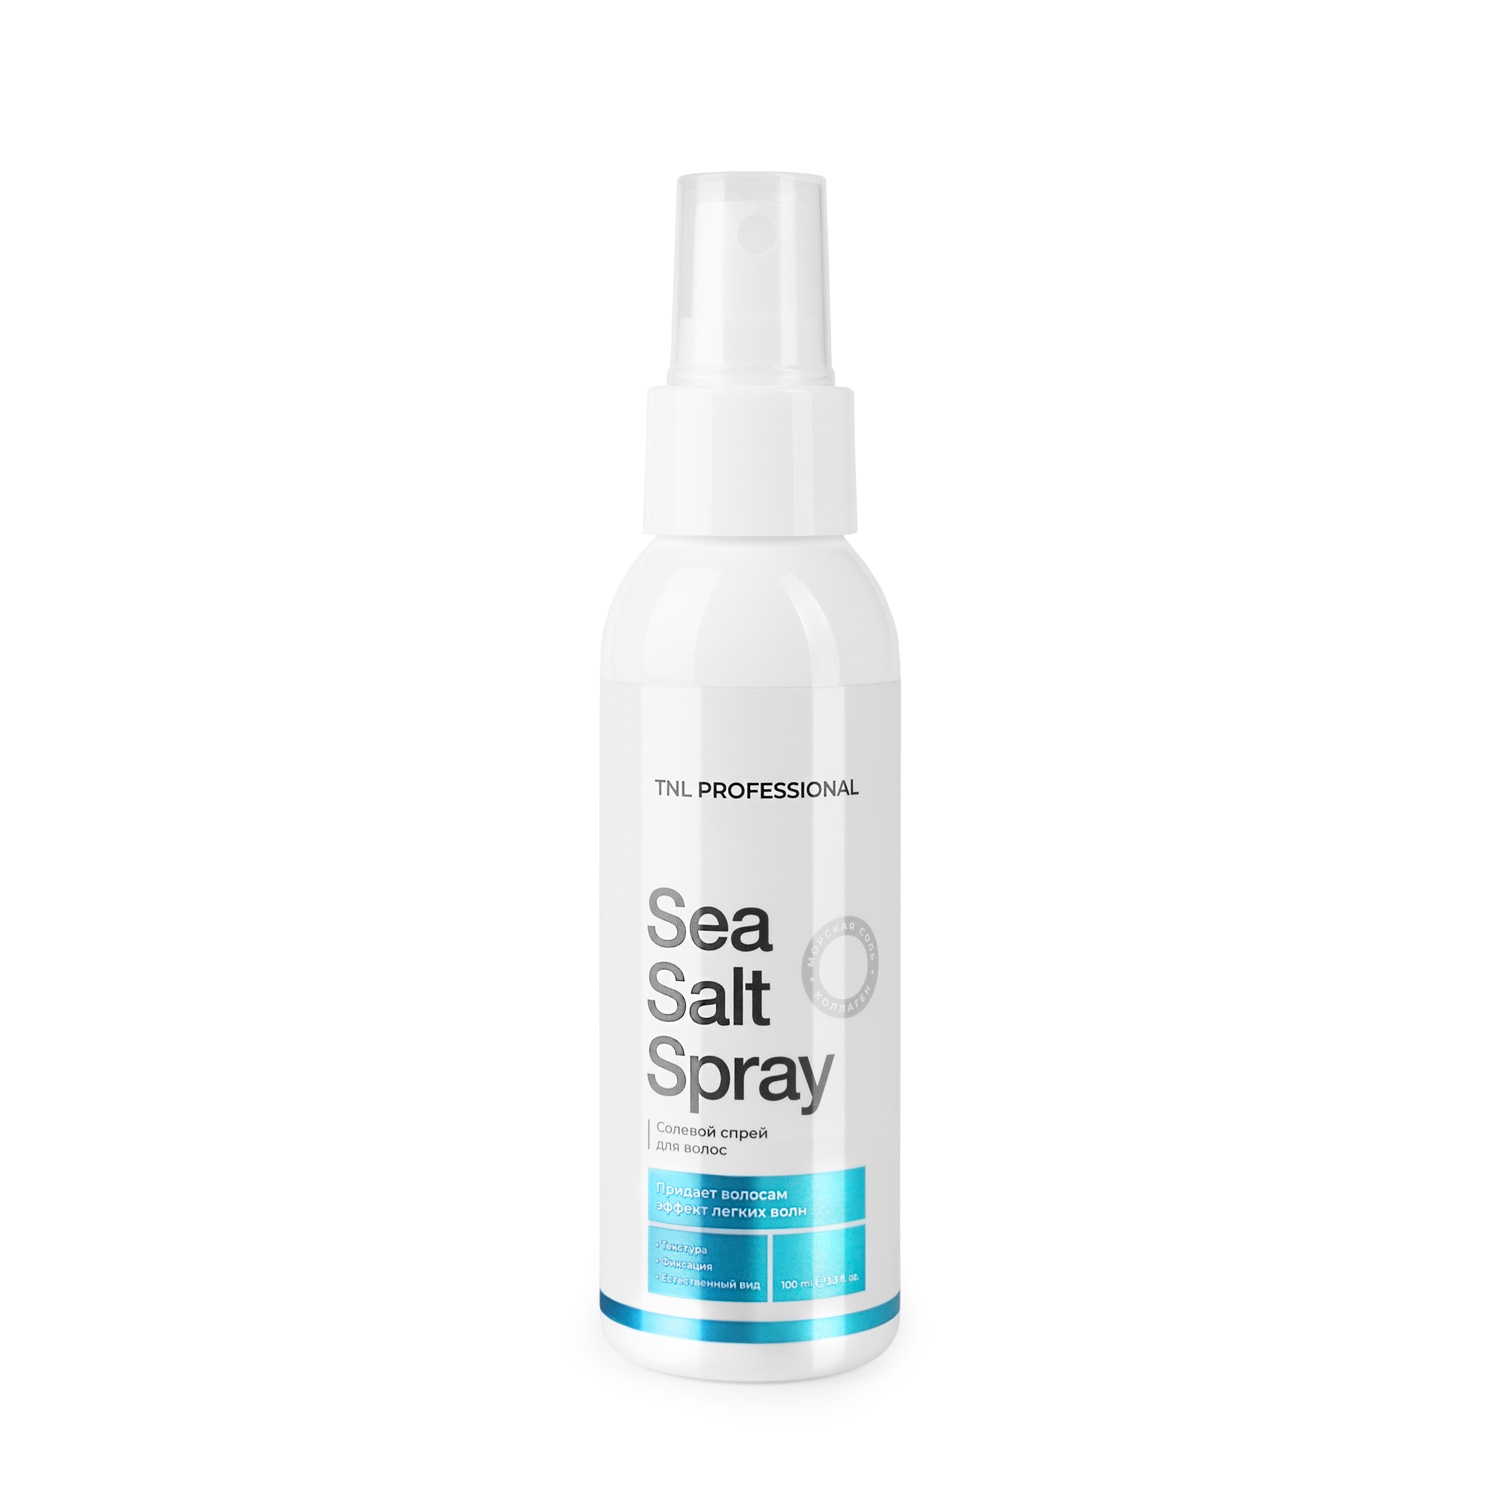 Спреи для волос:  TNL PROFESSIONAL -  Солевой спрей для волос Sea Salt Spray для естественной укладки с морской солью и коллагеном (100 мл)